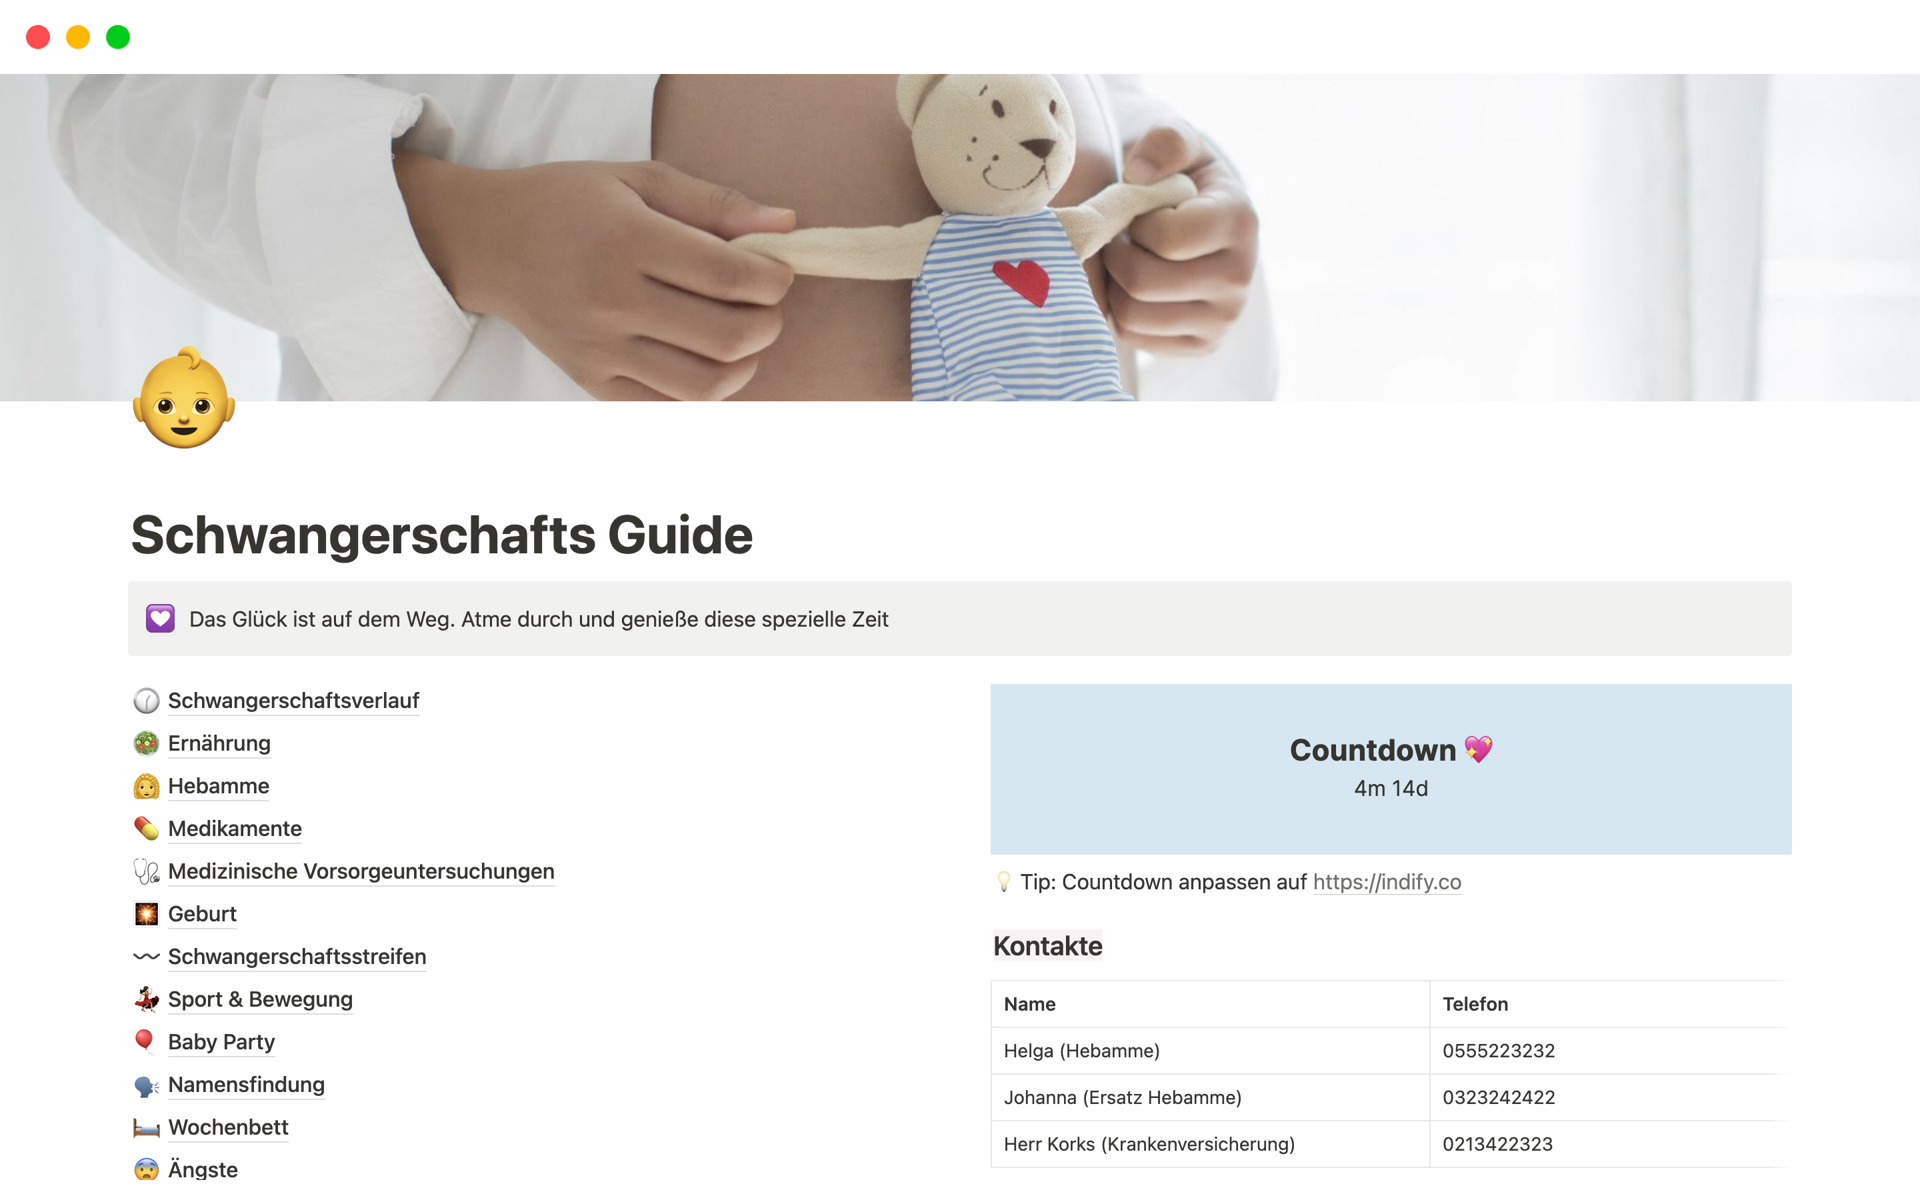 A template preview for Schwangerschafts Guide